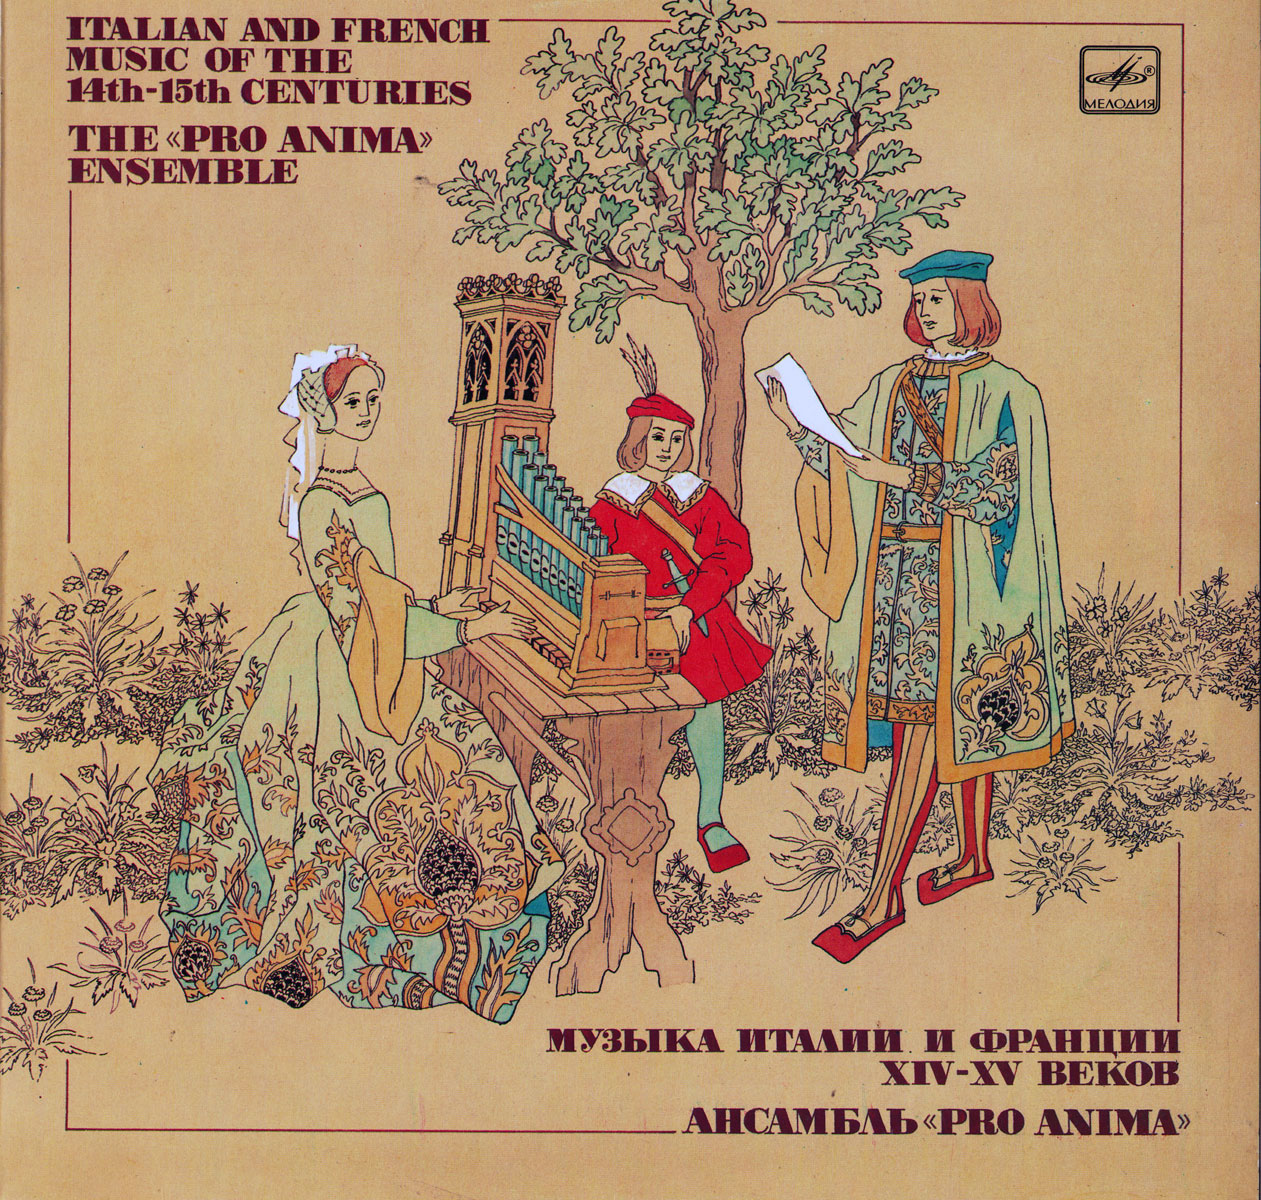 Ансамбль “Pro Anima” - Музыка Италии и Франции XIV-XV веков